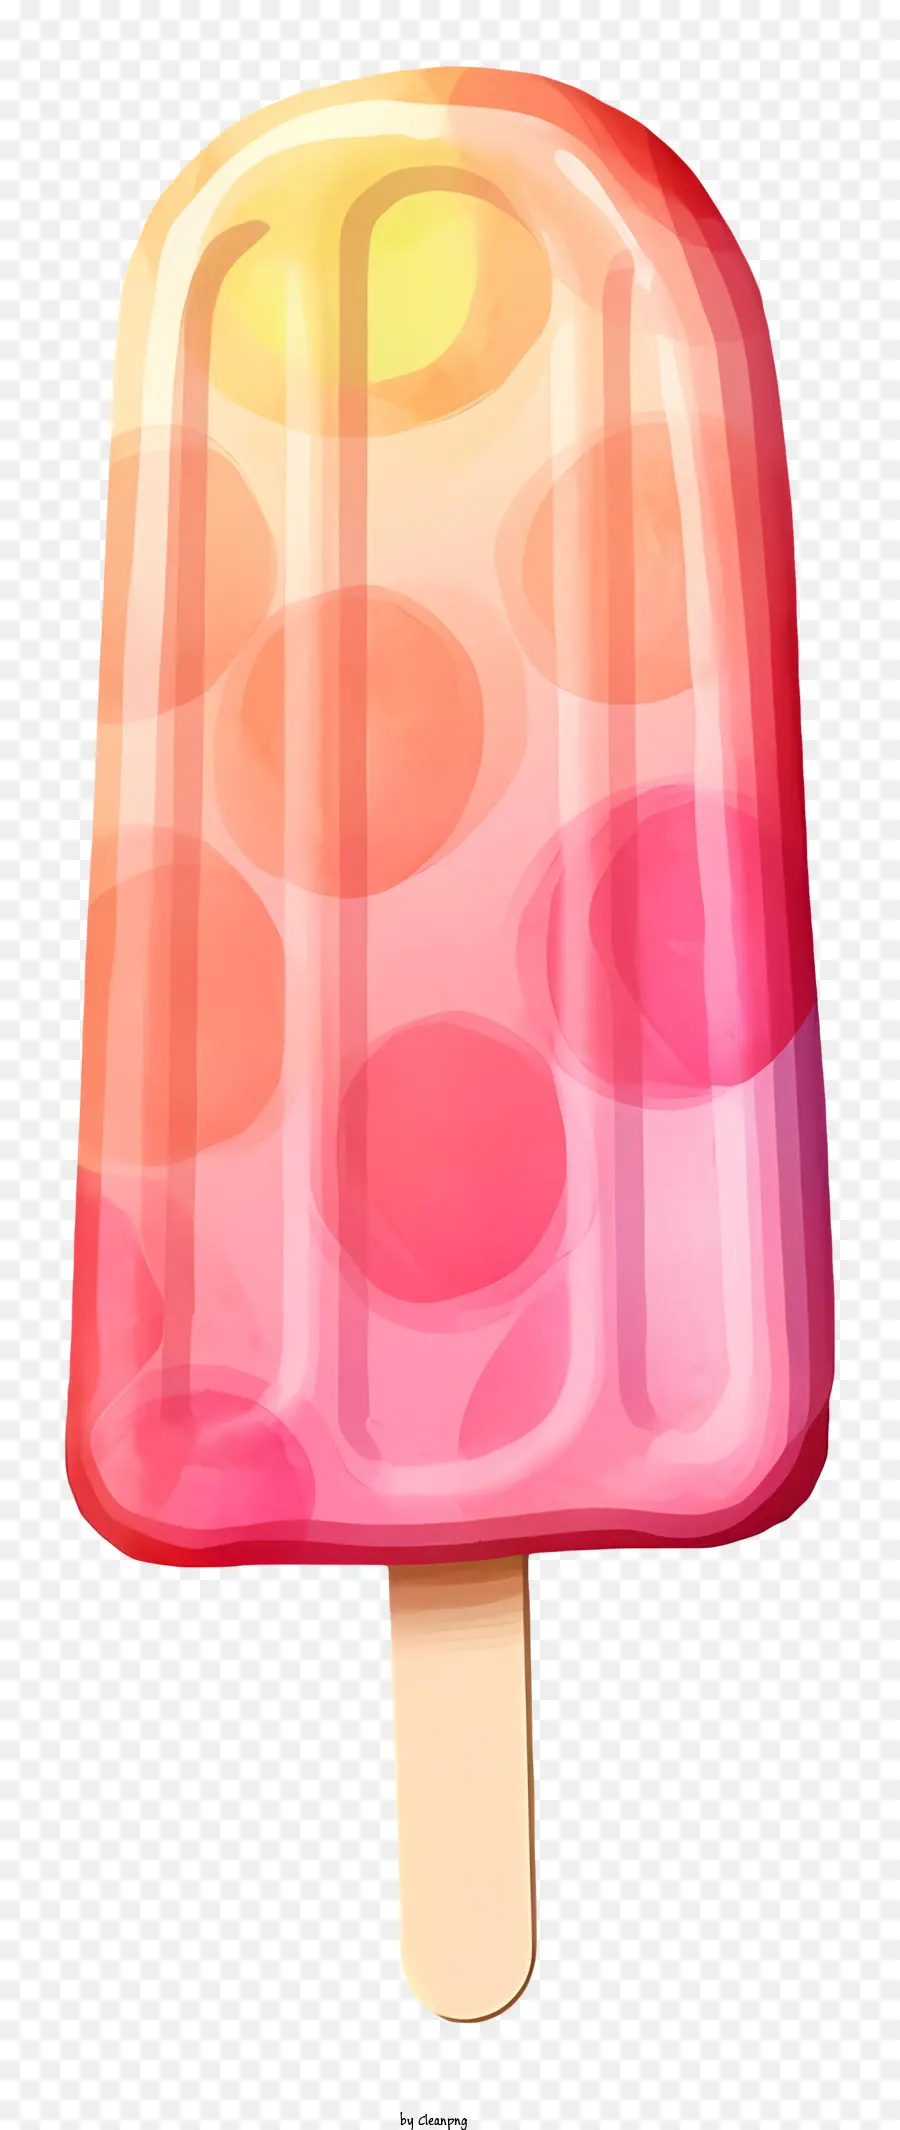 Papersicle on a Stick Popsicle rosa luminoso ghiacciolo arancione con bolle sfondo nero visualizza piccolo ghiacciolo rotondo - Copsicle colorato con bolle visualizzate su sfondo nero